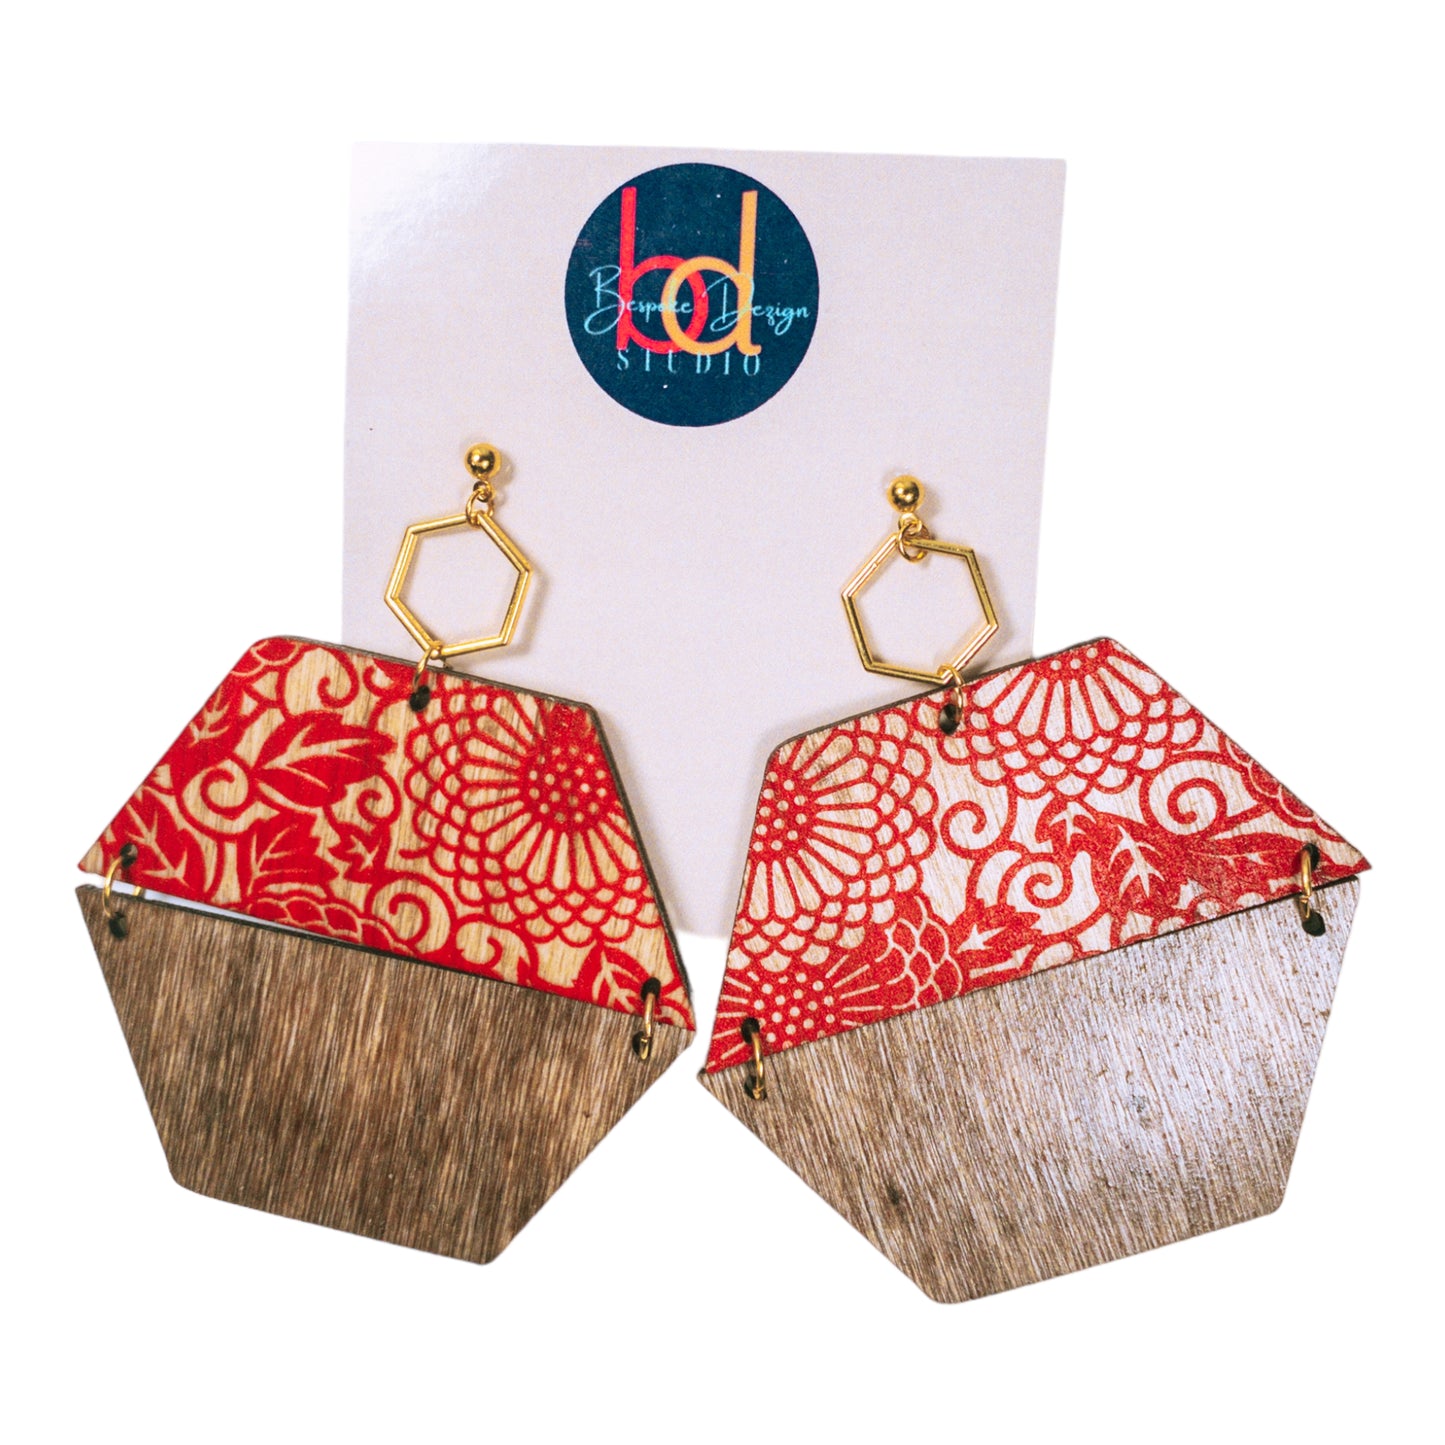 Octagon Wood Earrings w/Ornate Pattern